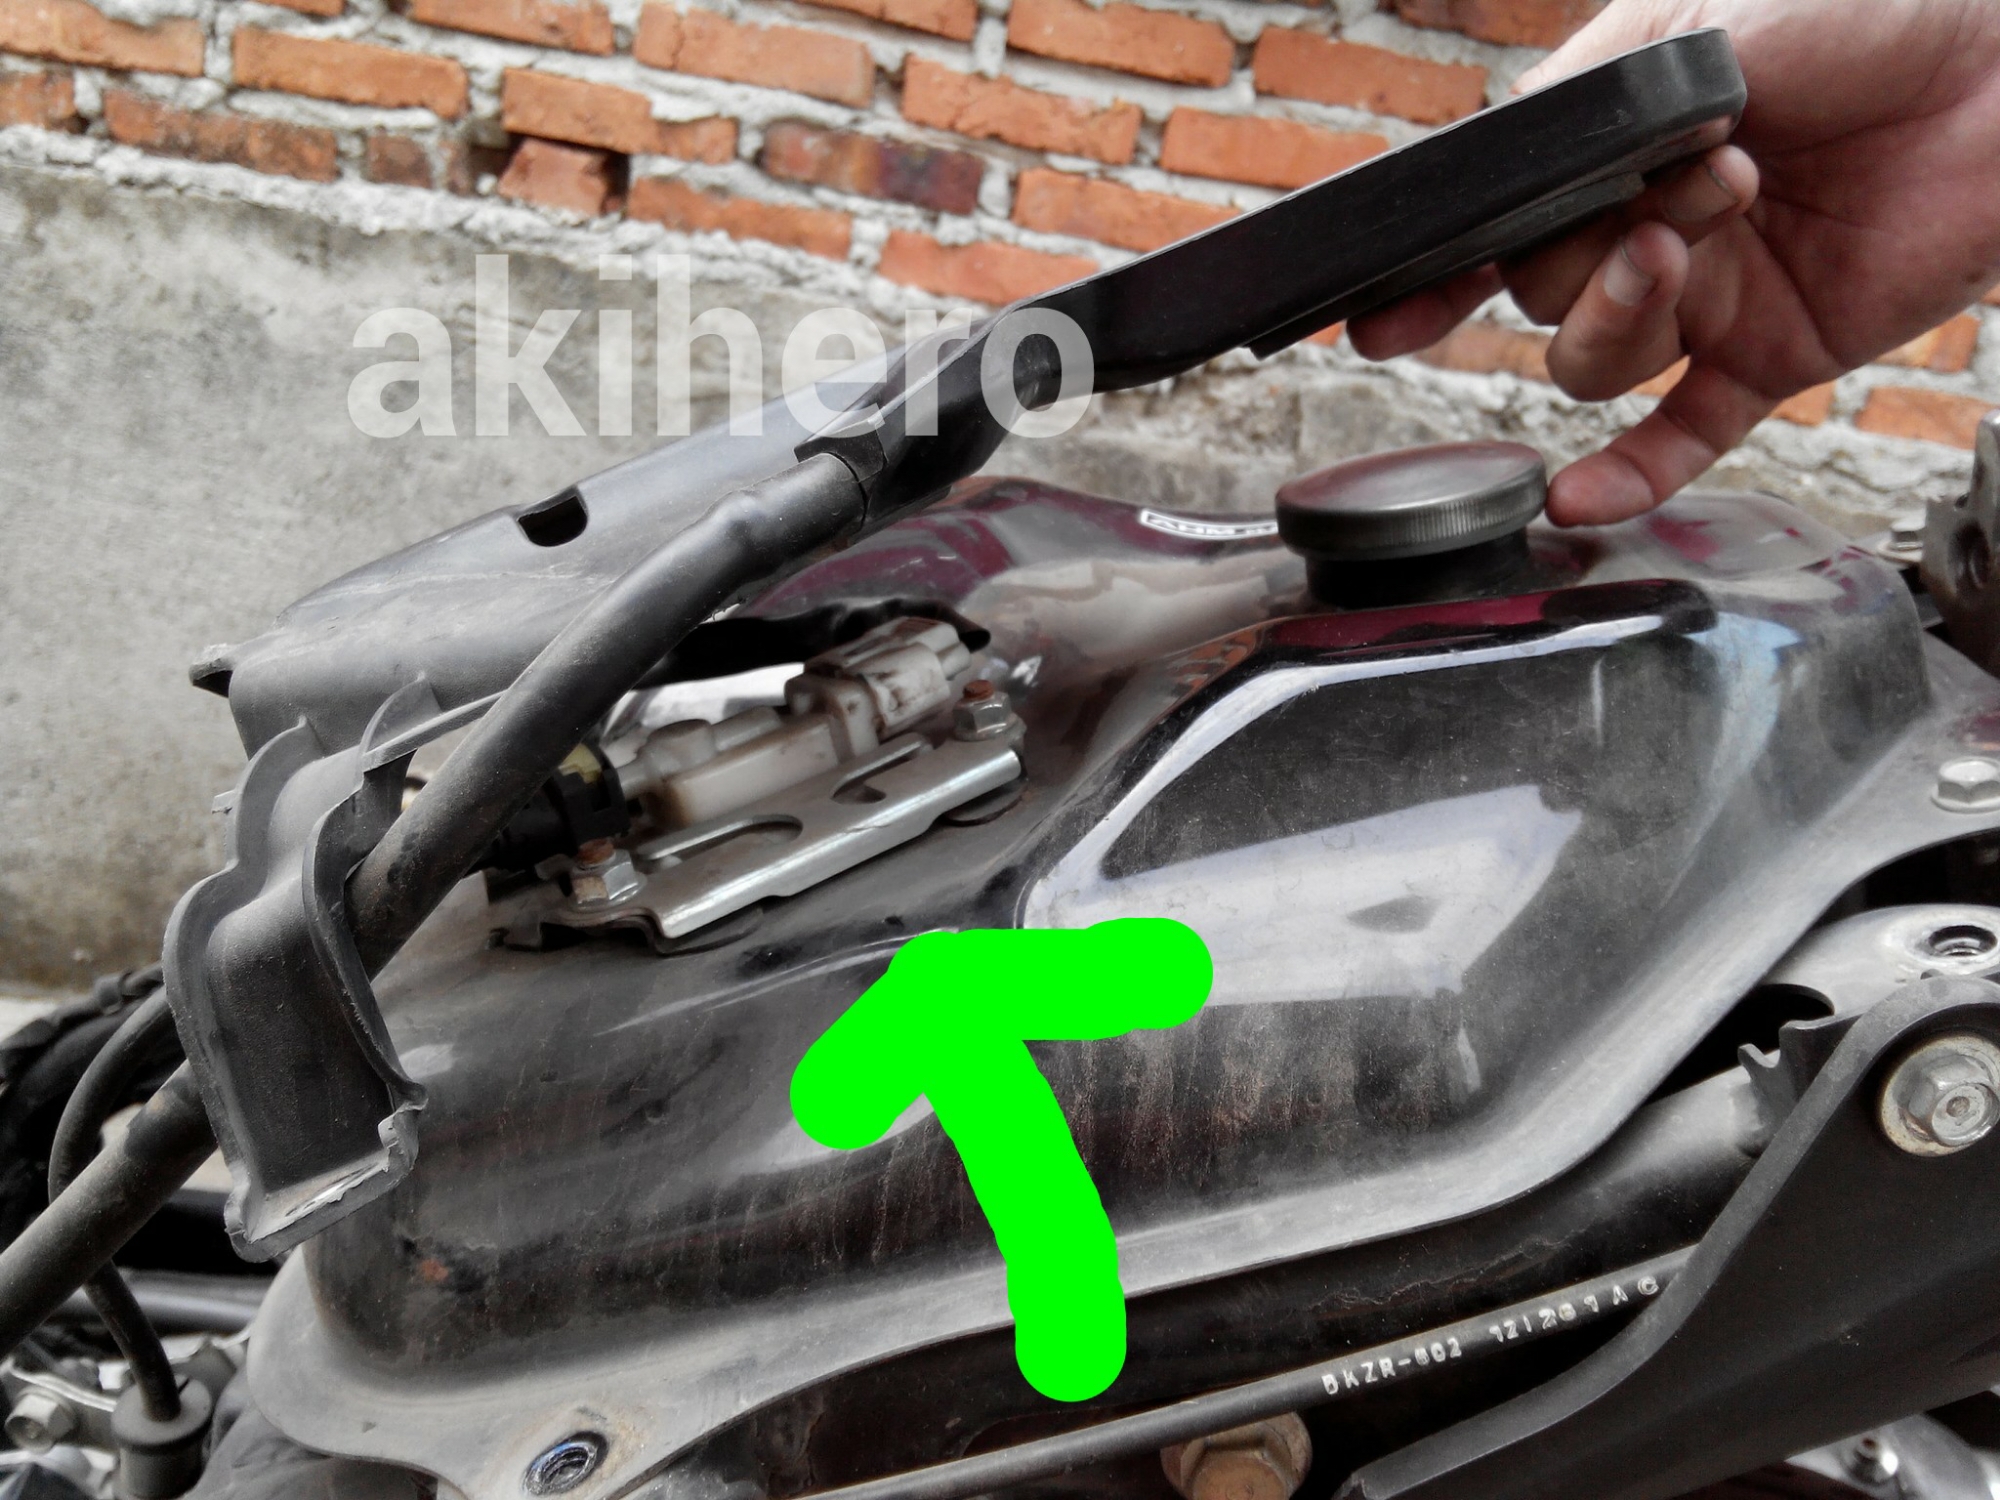 Mengganti Filter Bensin Pada Fuel Pump Vario PCX Akihero